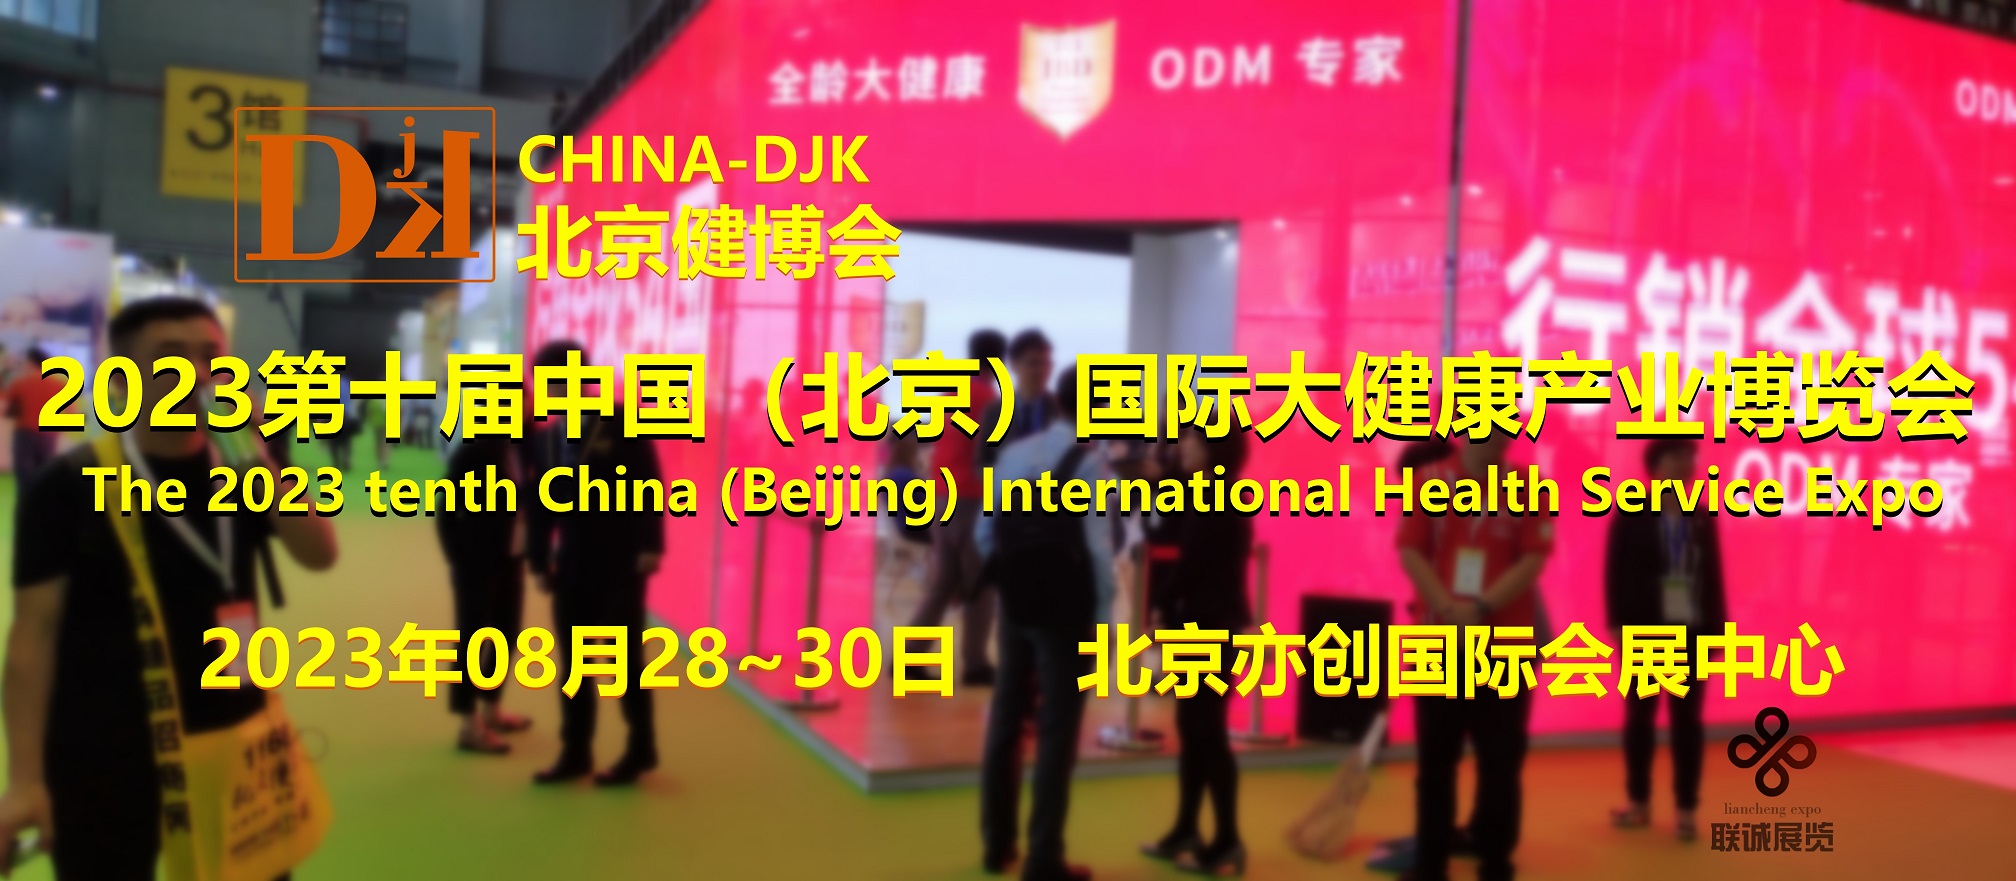 2023健康展，北京健康展会，China-DJK中国健博会